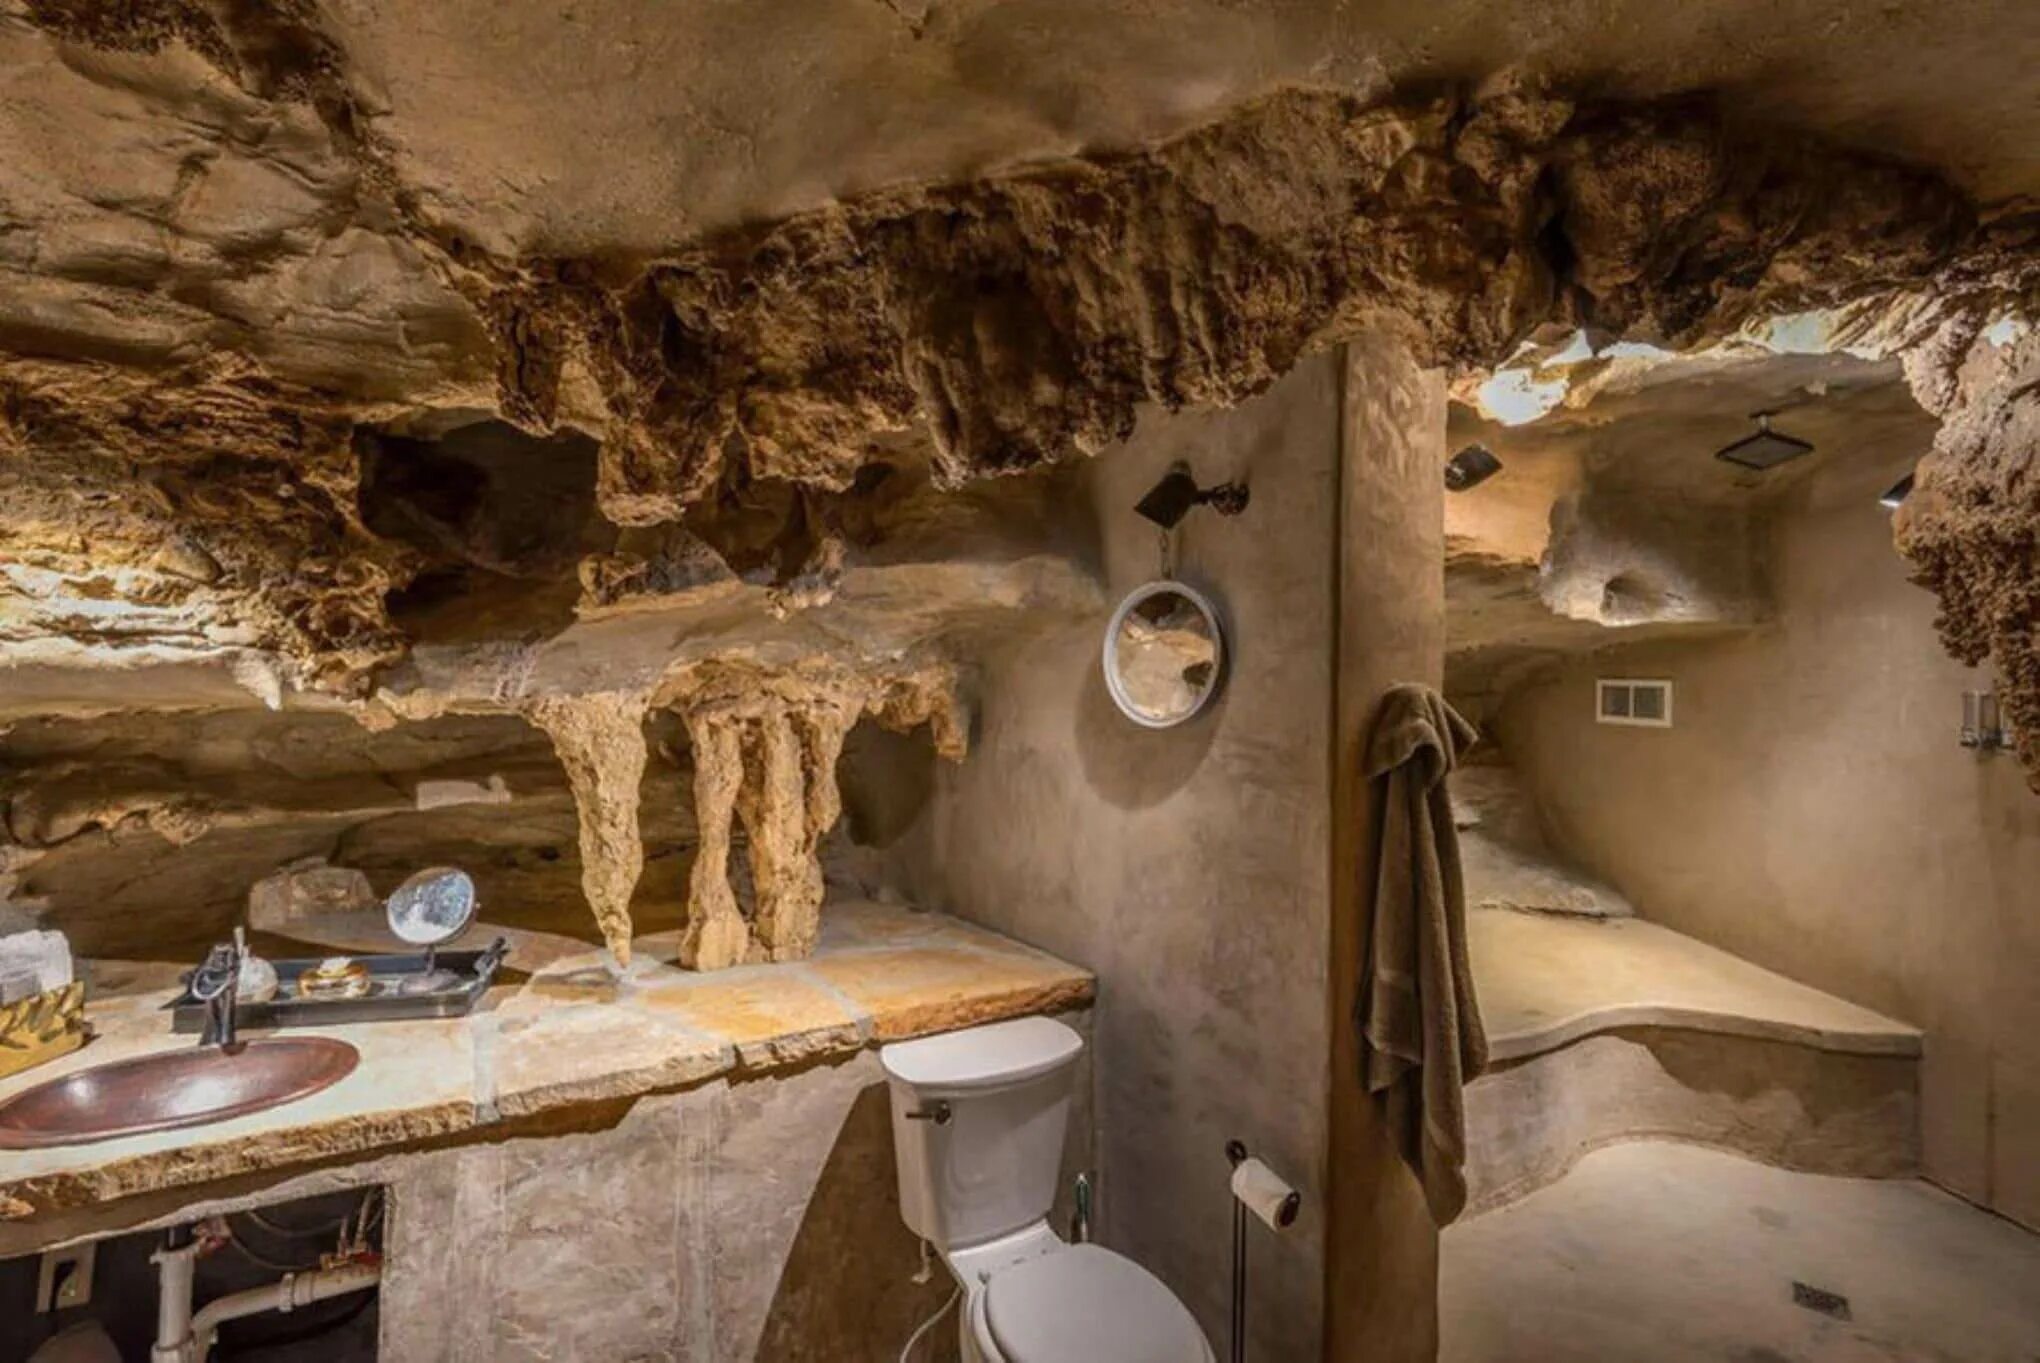 Cave home. Гостиница Beckham Creek Cave Lodge. Beckham Creek Cave Lodge, США, Арканзас. Комната в стиле пещеры. Санузел в стиле пещеры.